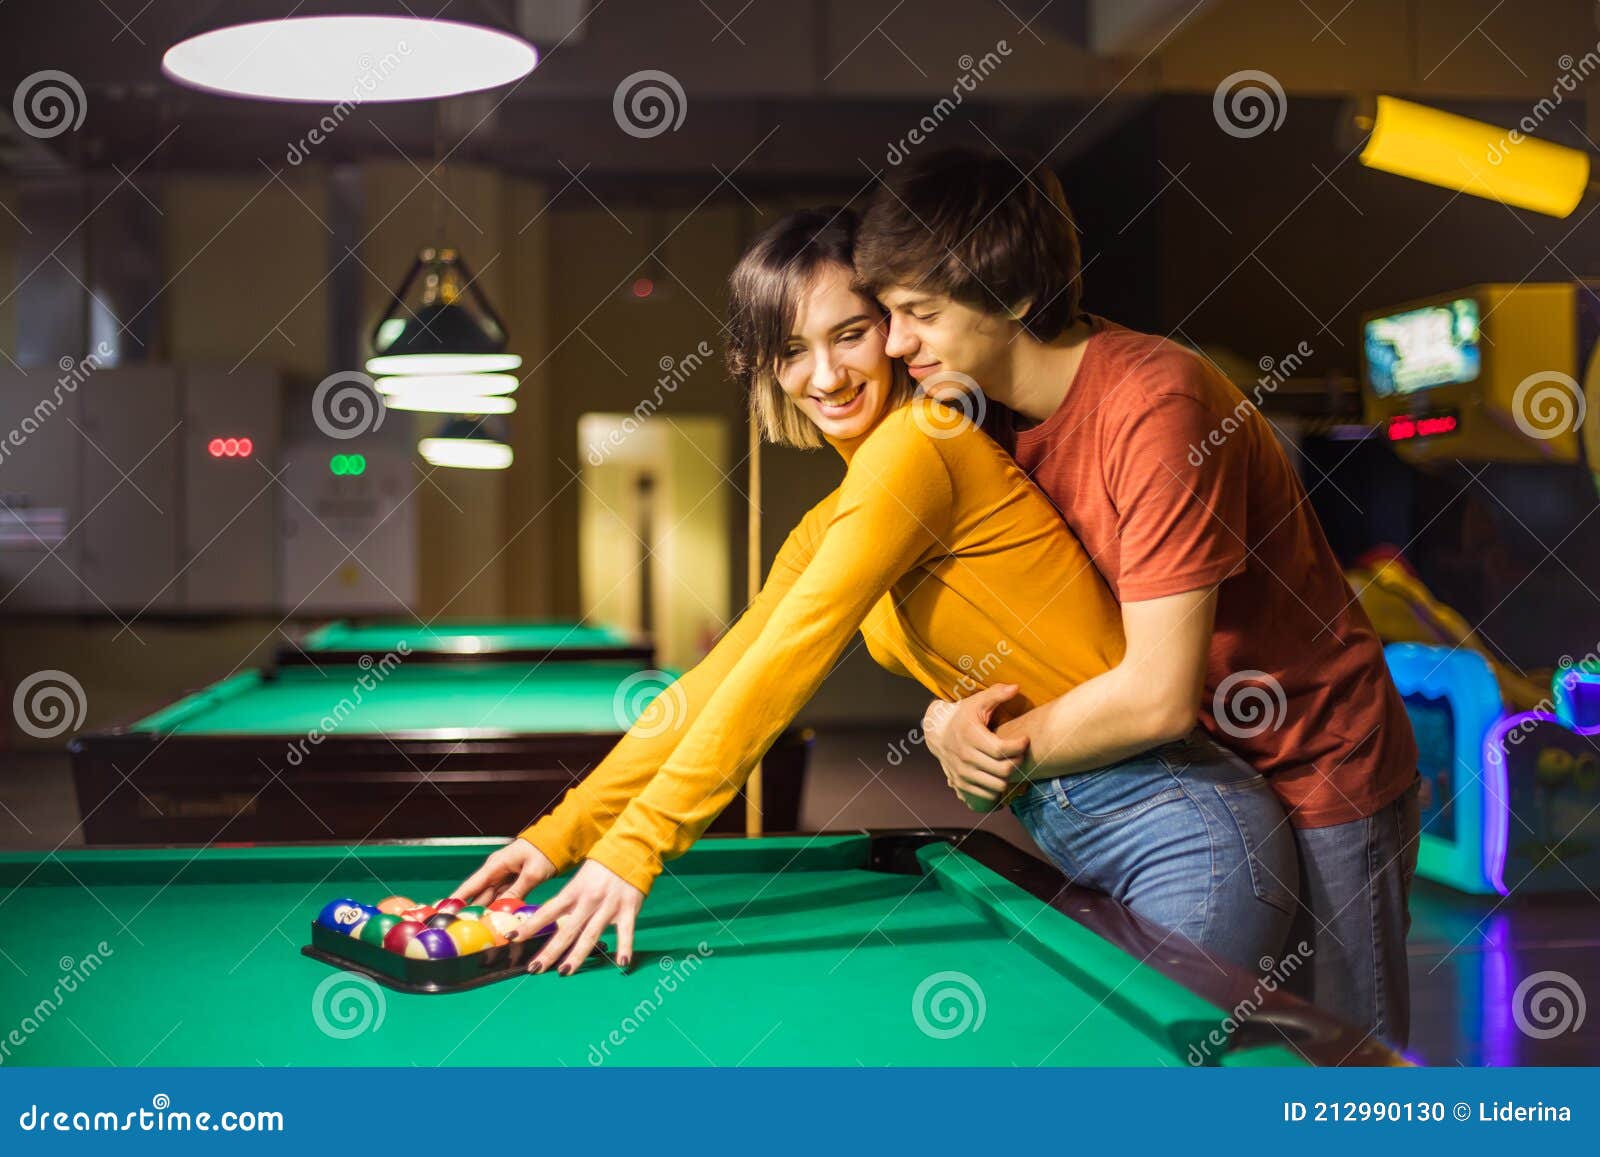 Namorado carinhoso aprendendo sua namorada a jogar sinuca